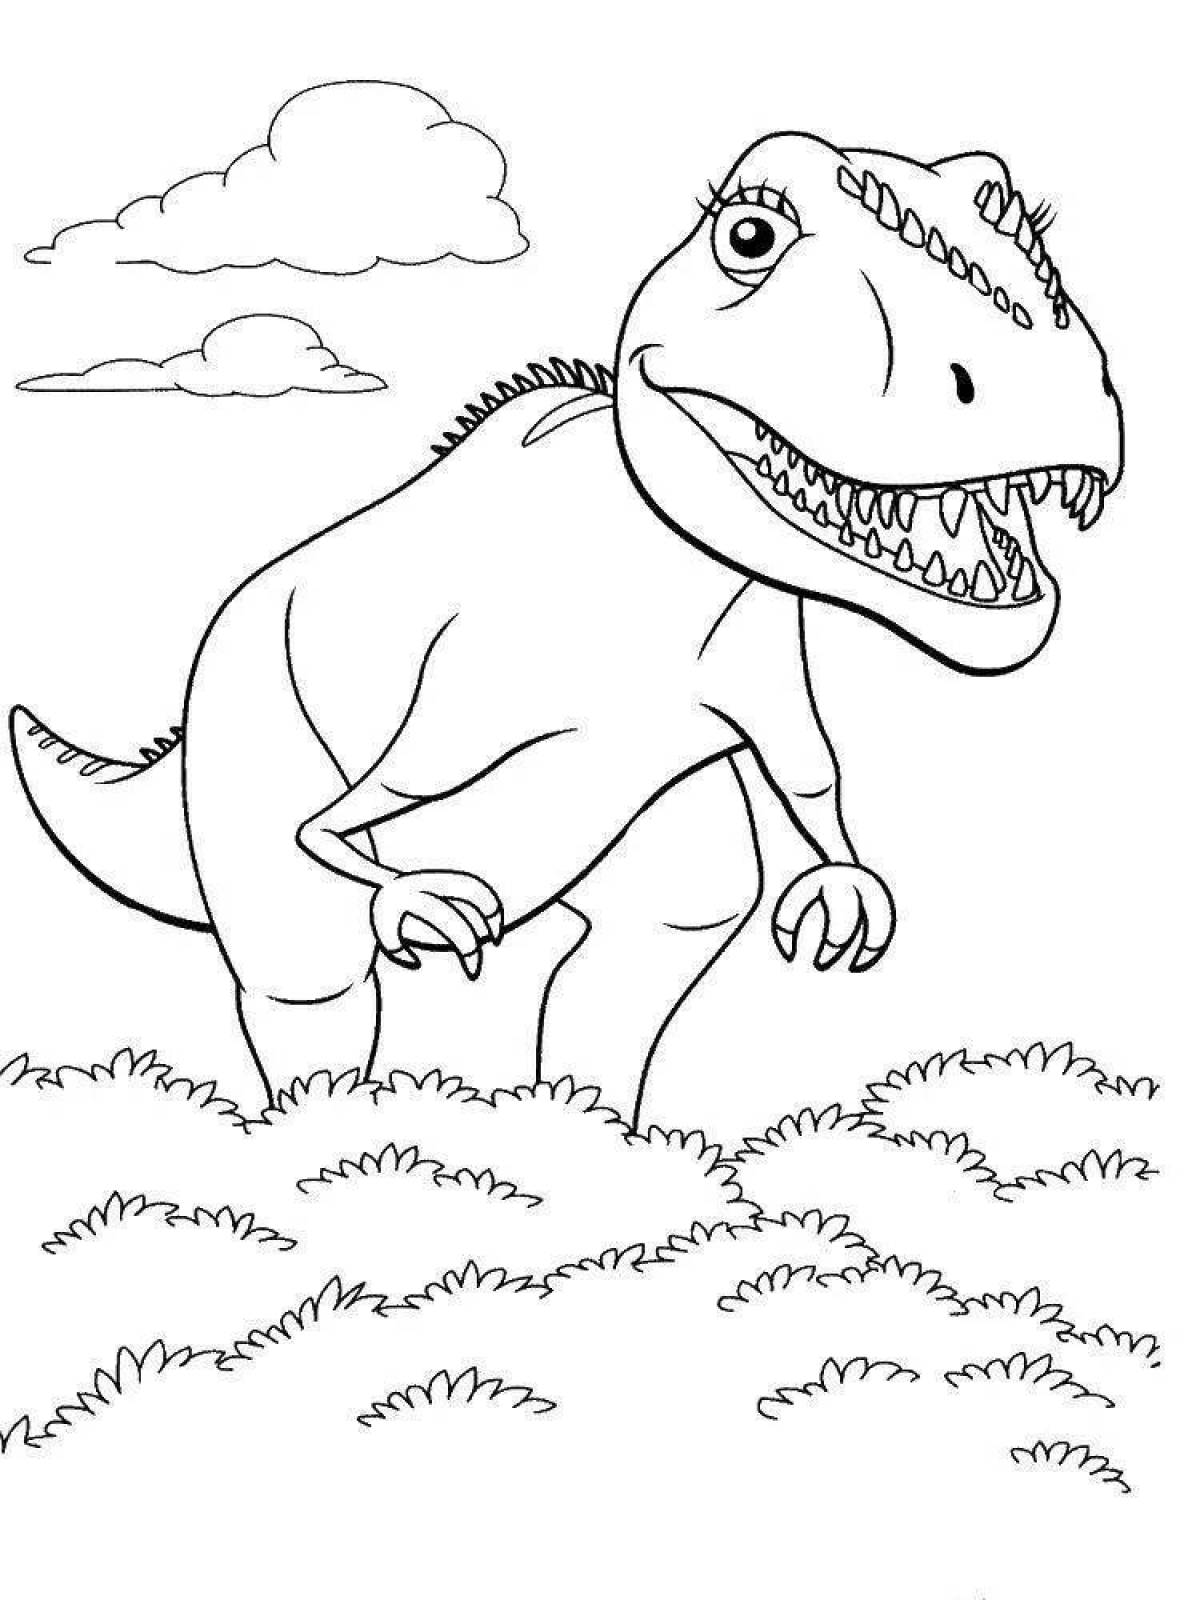 Динозавры для раскрашивания. Поезд динозавров Тираннозавр раскраска. Тарбозавр раскраска динозавра. Динозавры / раскраска. Динозавр раскраска для детей.